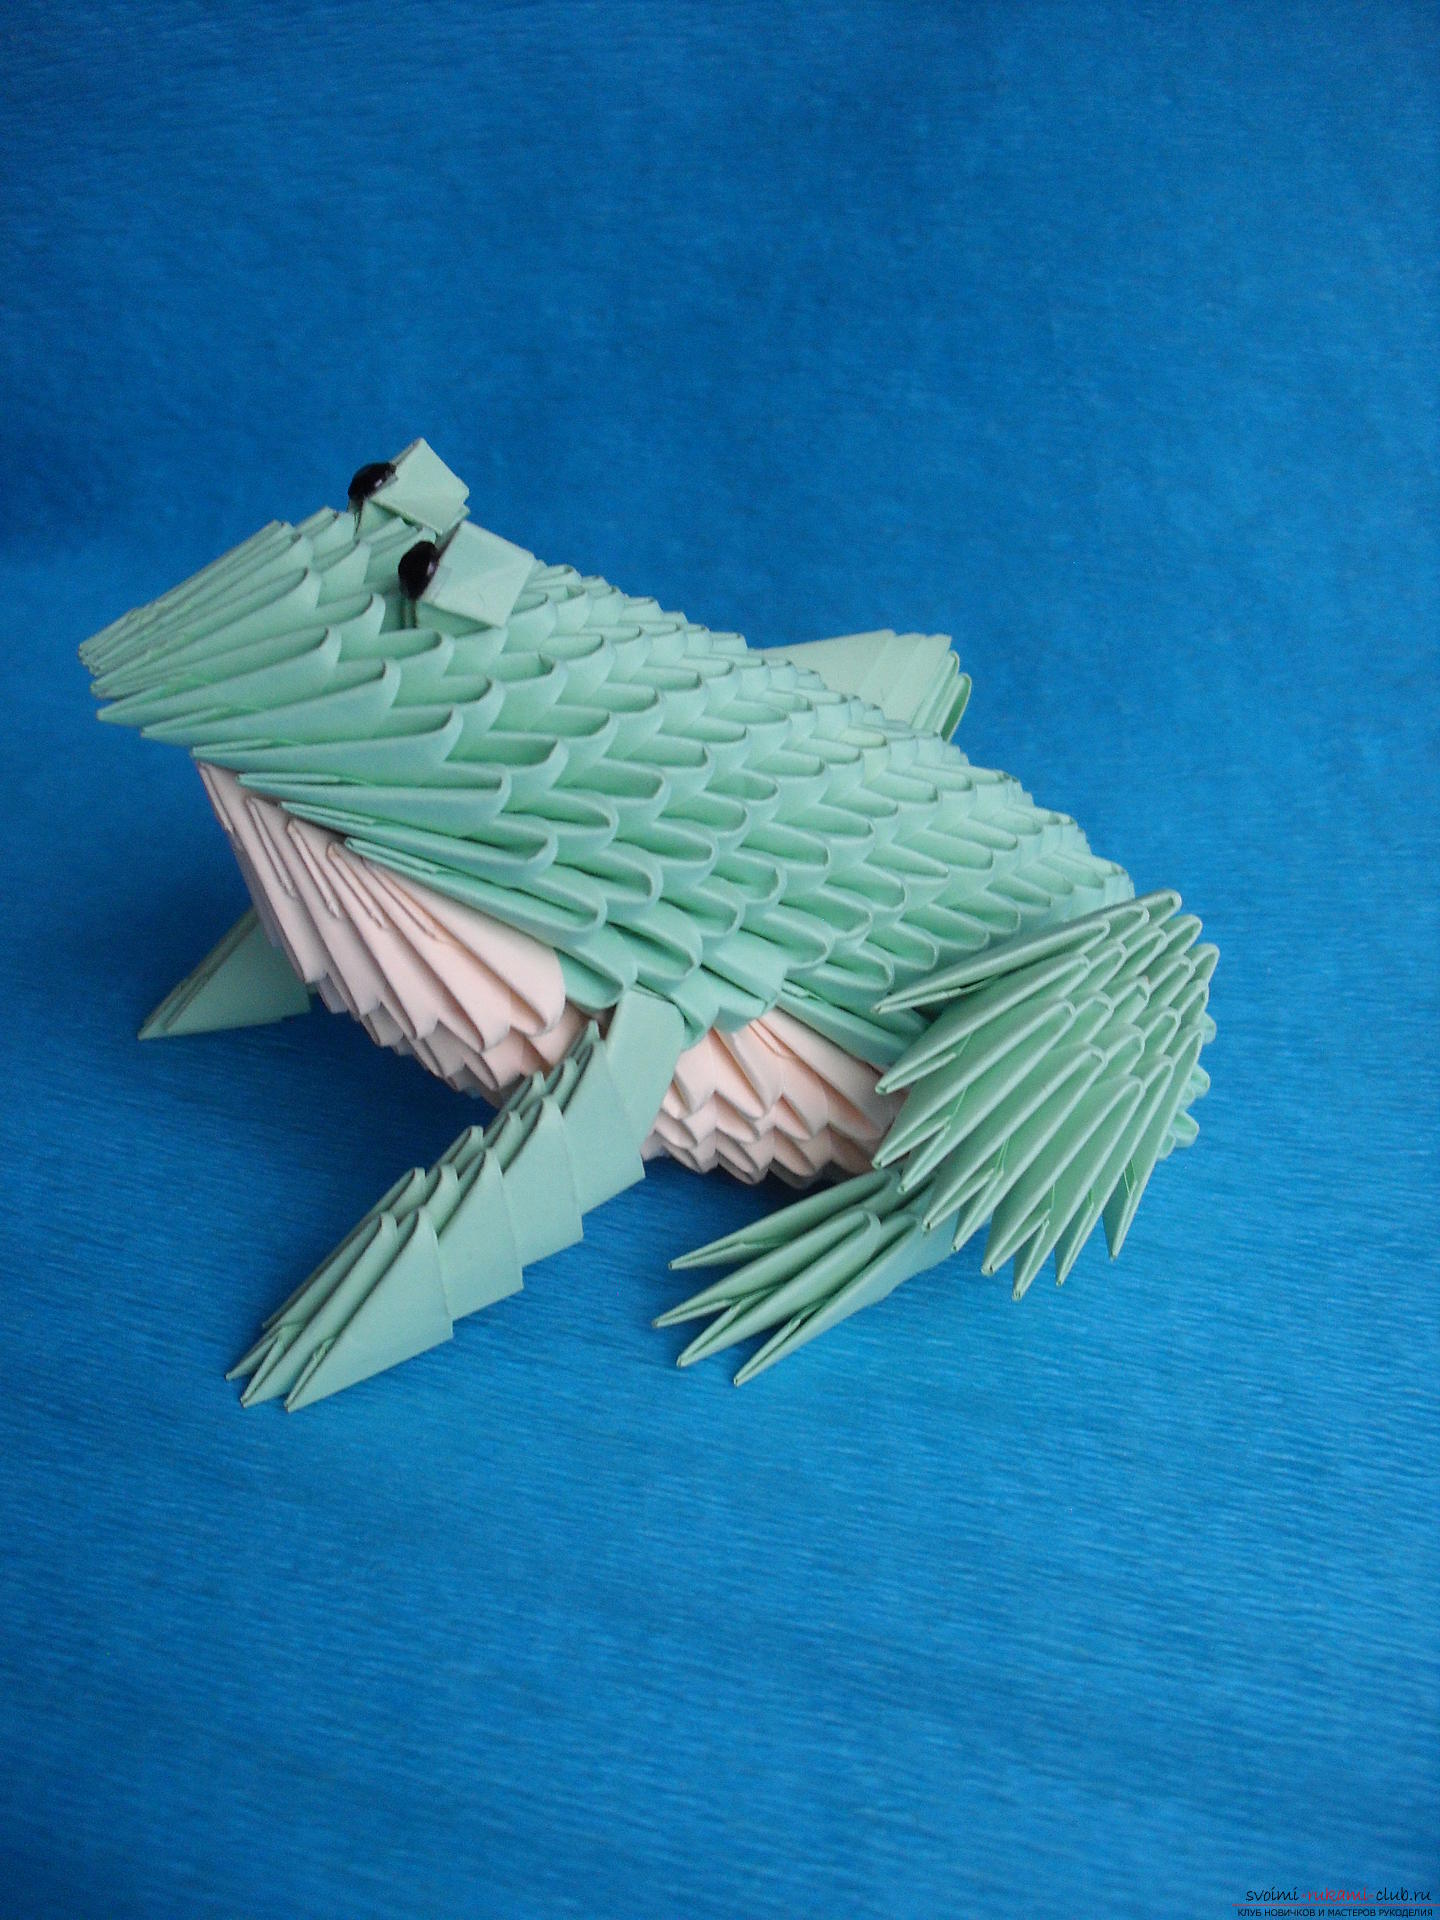 Этот мастер-класс расскажет как сделать поделку из модульных оригами - лягушку.. Фото №1